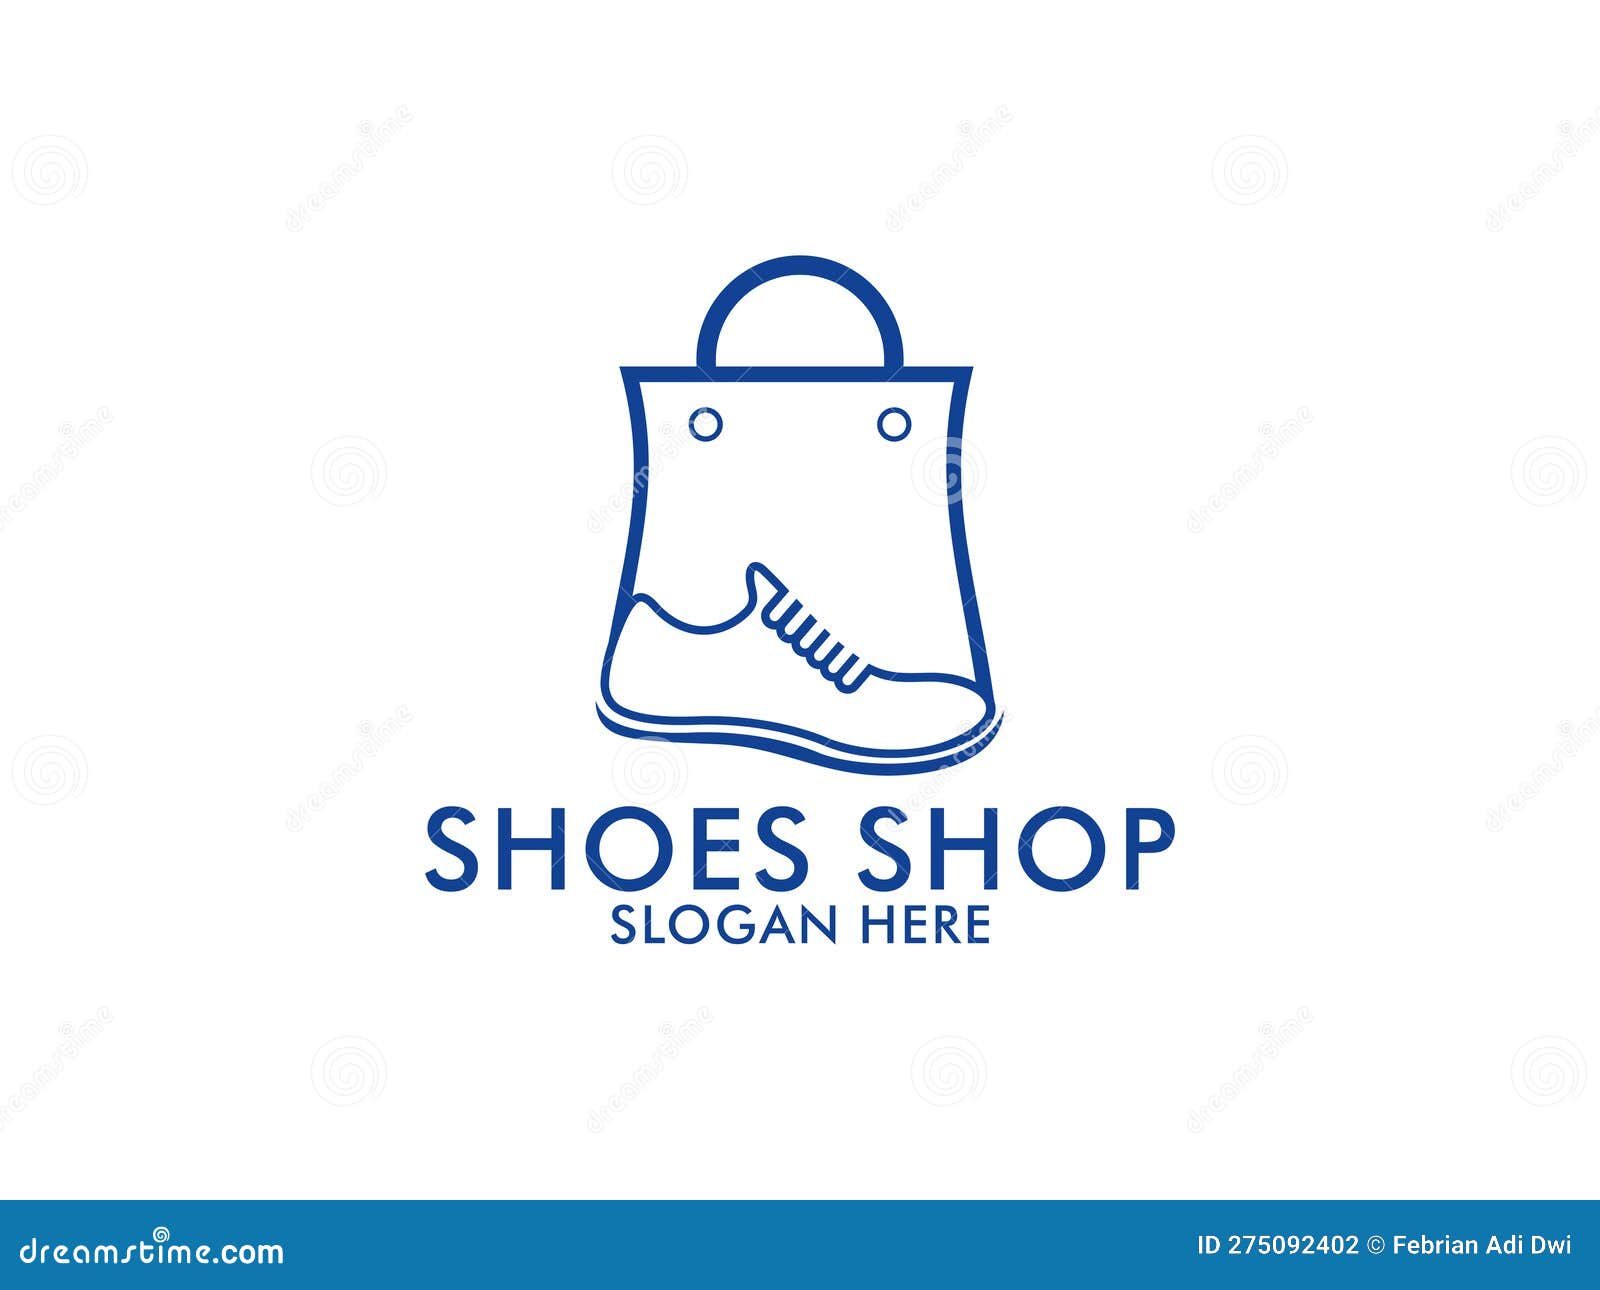 Shoes Shop Logo, Shoe Sneaker Logo Vector Template Design Stock Vector ...